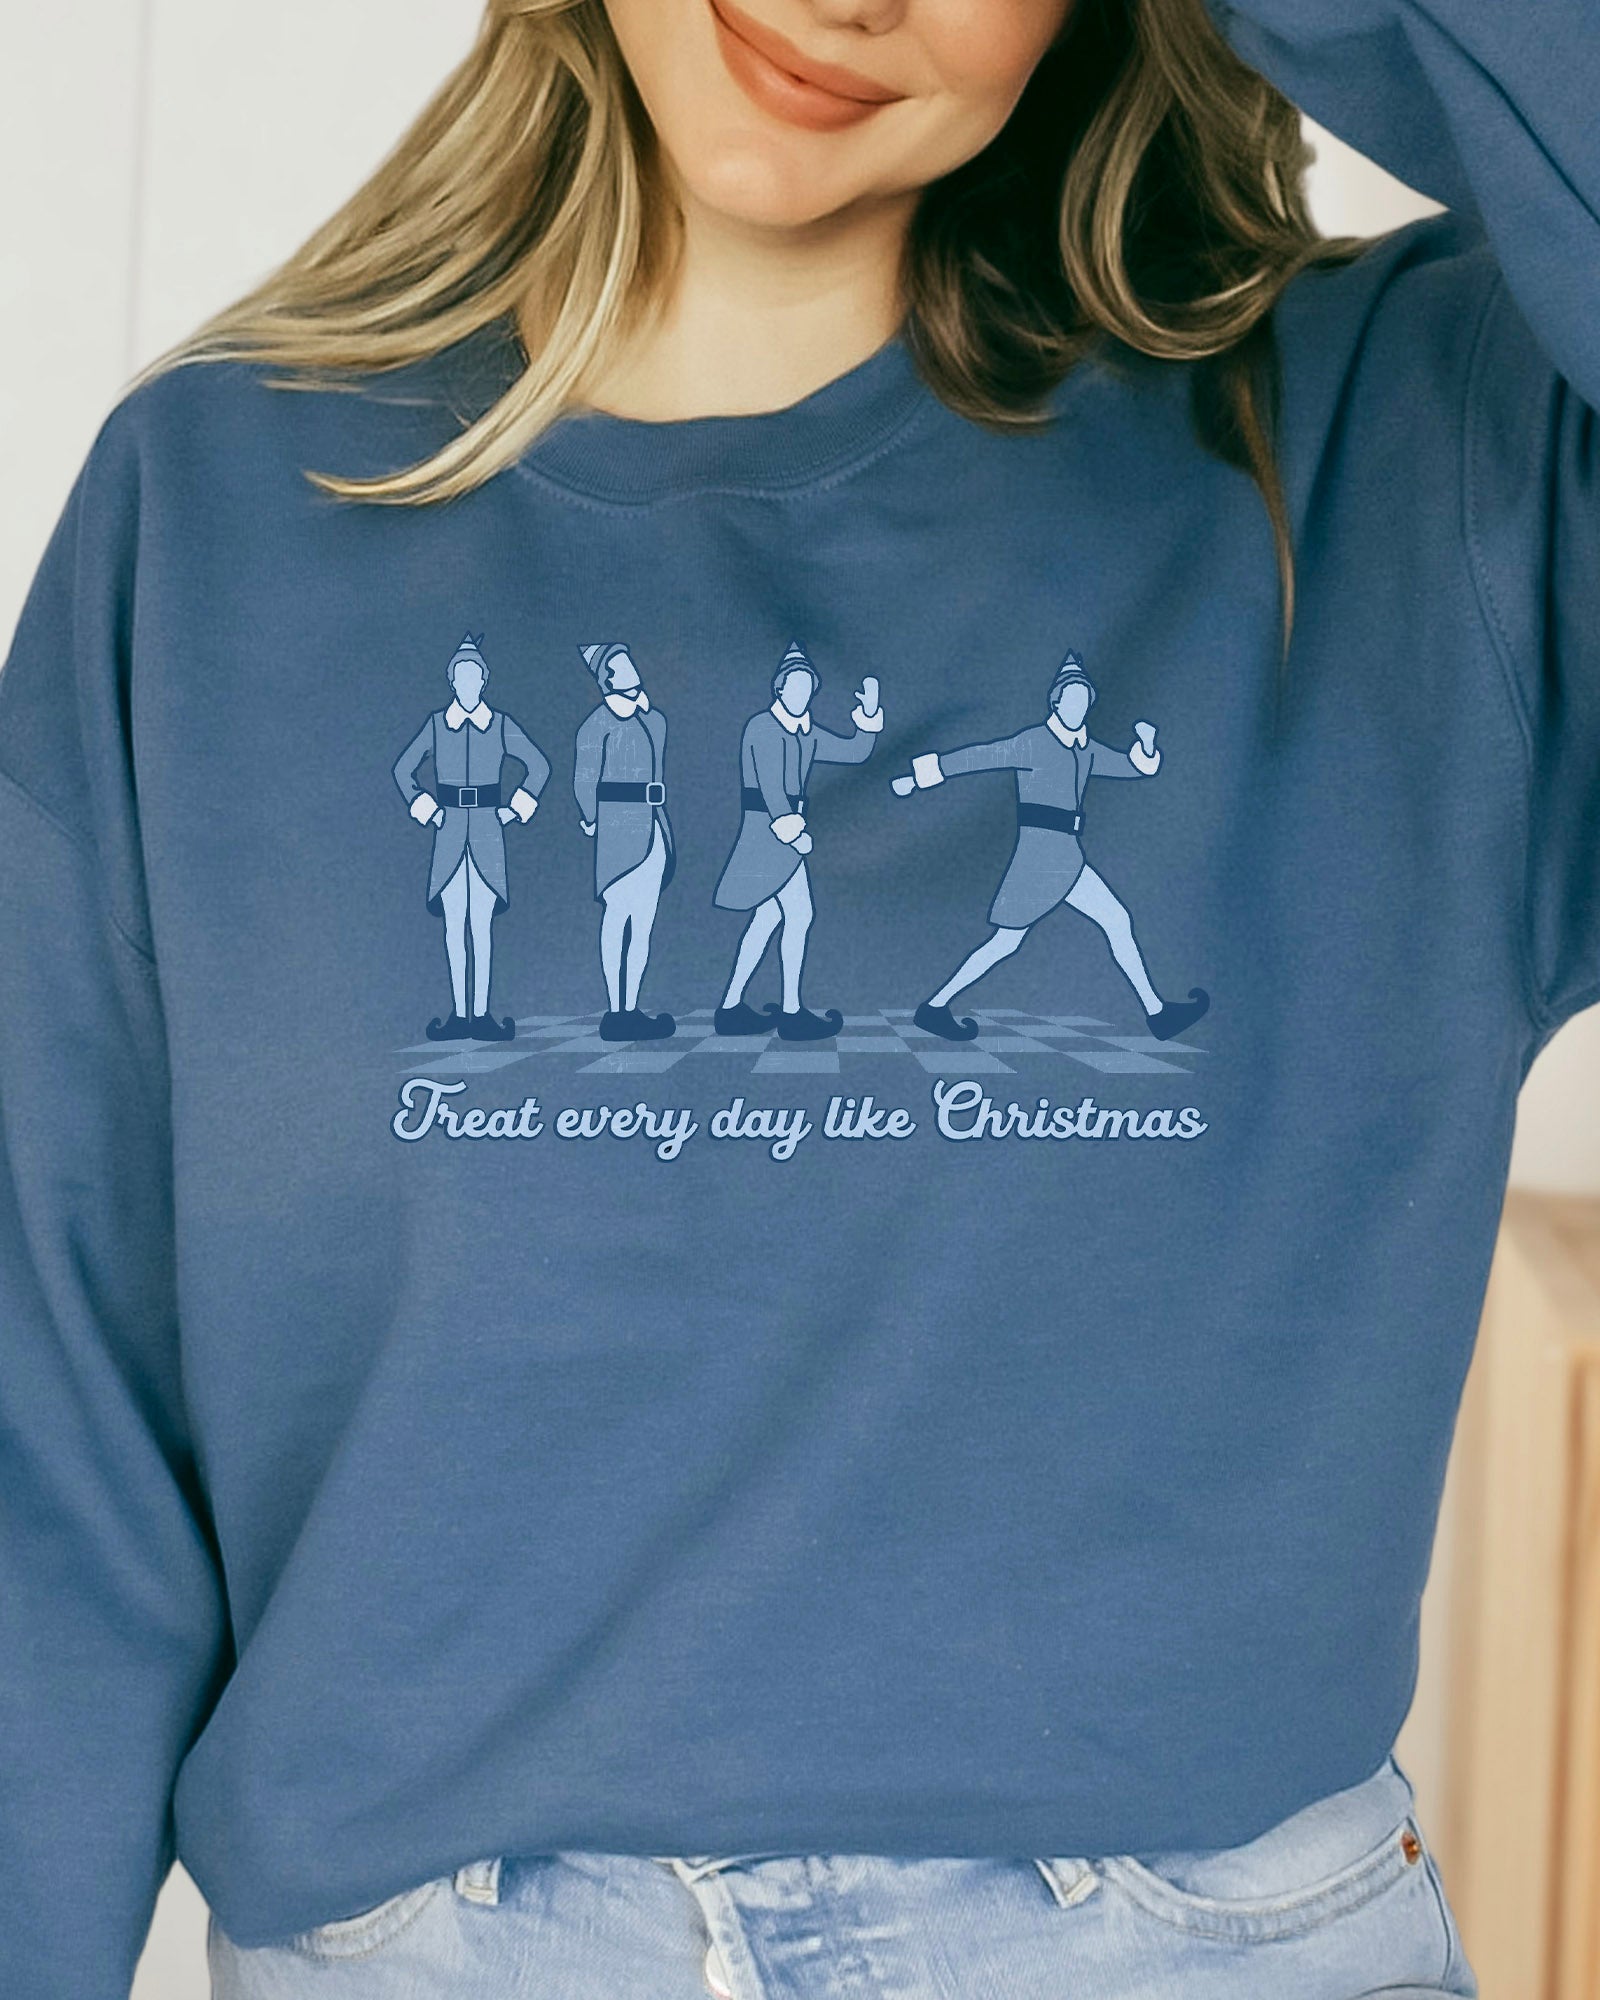 Every Day Like Christmas Sweatshirt